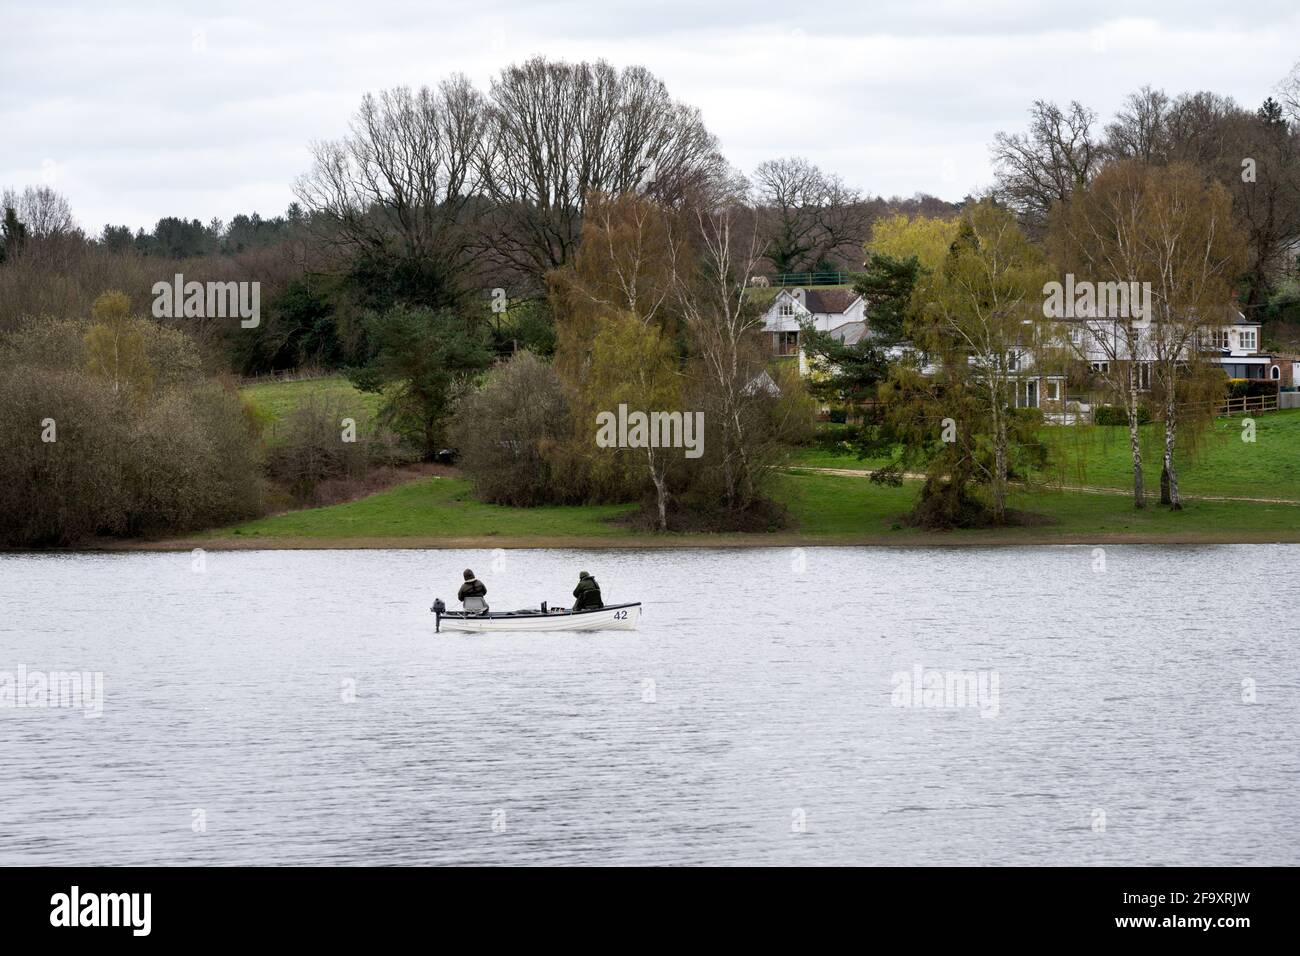 BEWL WATER, INGHILTERRA - 7 APRILE 2021: Due persone che pescano su una piccola barca su Bewl Water, nel sud-est dell'Inghilterra Foto Stock